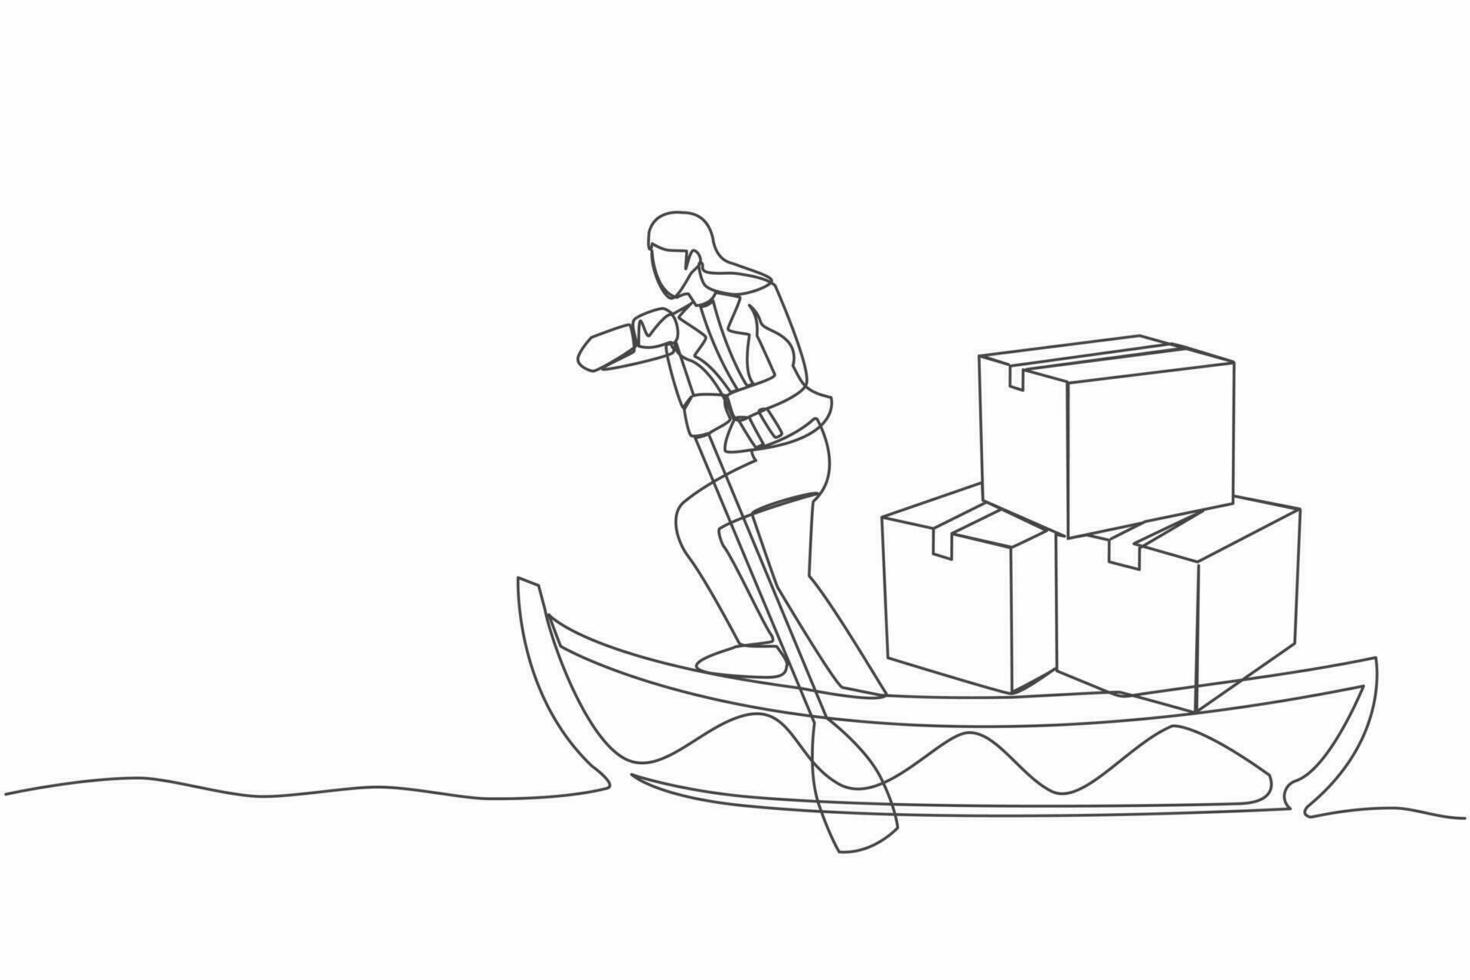 Single kontinuierlich Linie Zeichnung Geschäftsfrau Segeln Weg auf Boot mit Stapel von Karton. Ozean Transport. Versand Artikel geliefert über Segelboot. einer Linie zeichnen Design Vektor Grafik Illustration